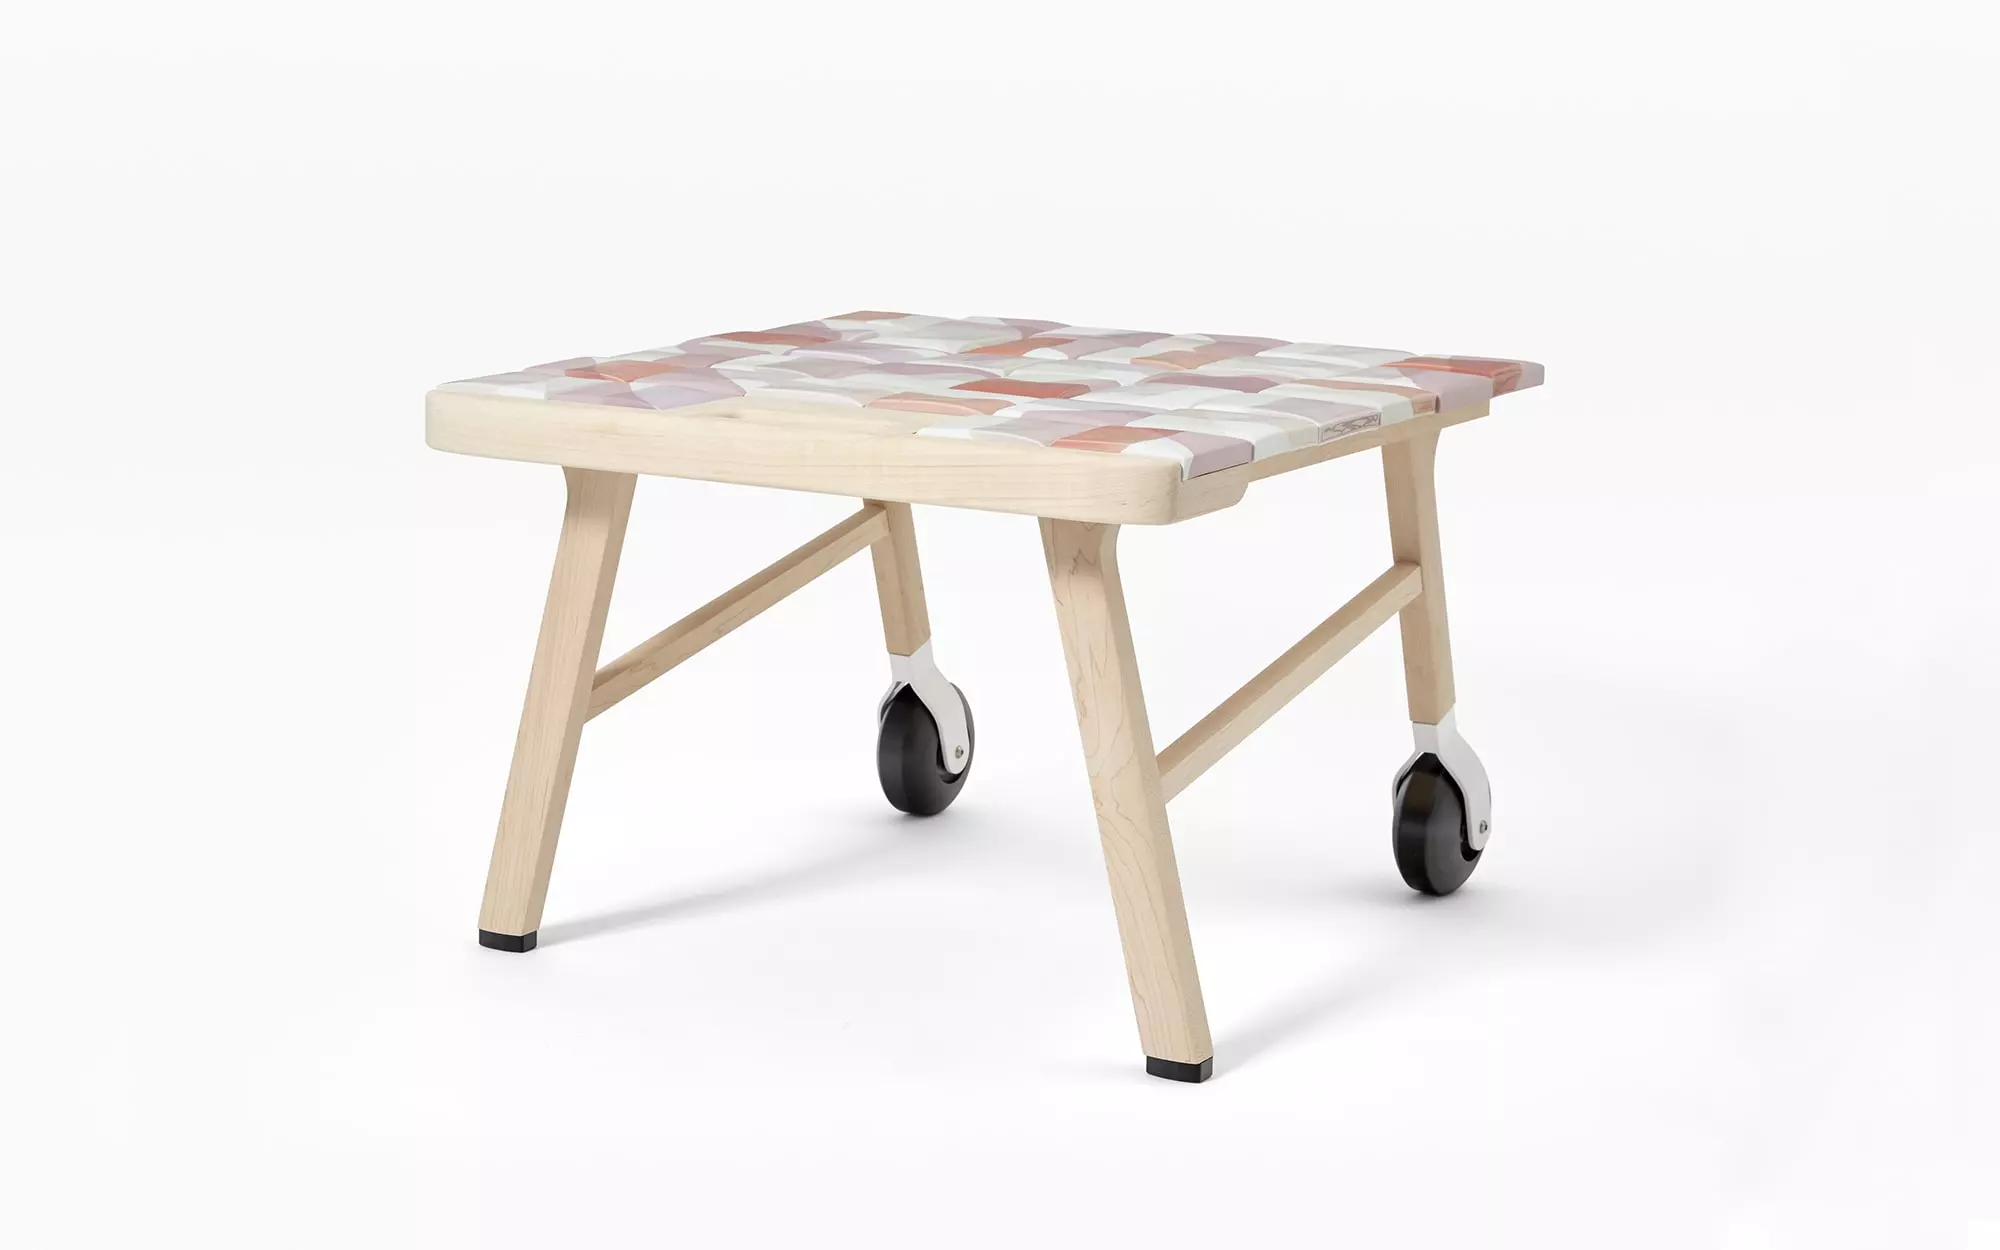 Tiles side table - Hella Jongerius - Coffee table - Galerie kreo